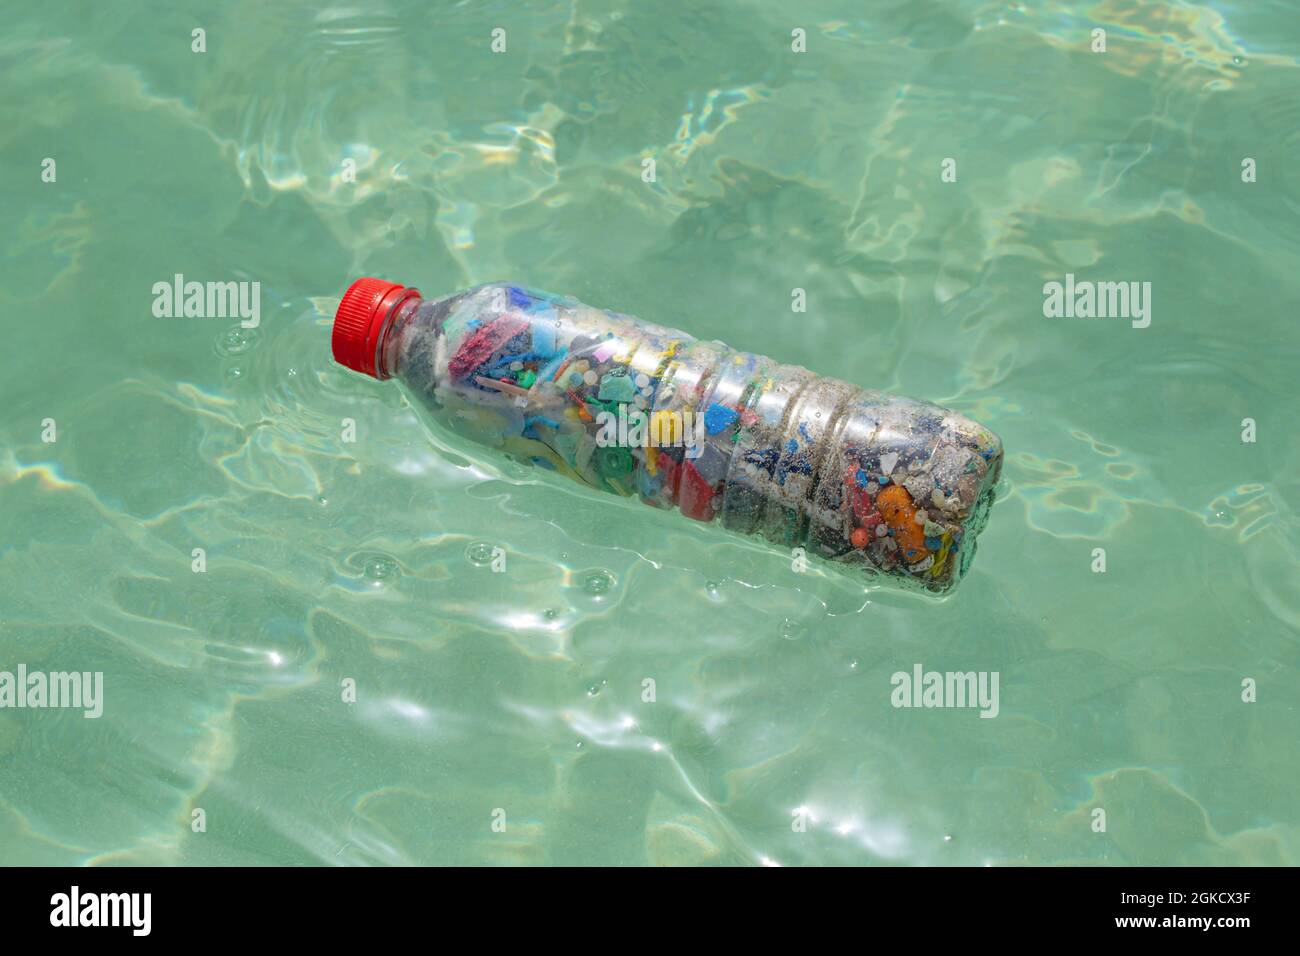 Flasche gefüllt mit Mikroplastik, die auf dem Meerwasser liegt  Stockfotografie - Alamy